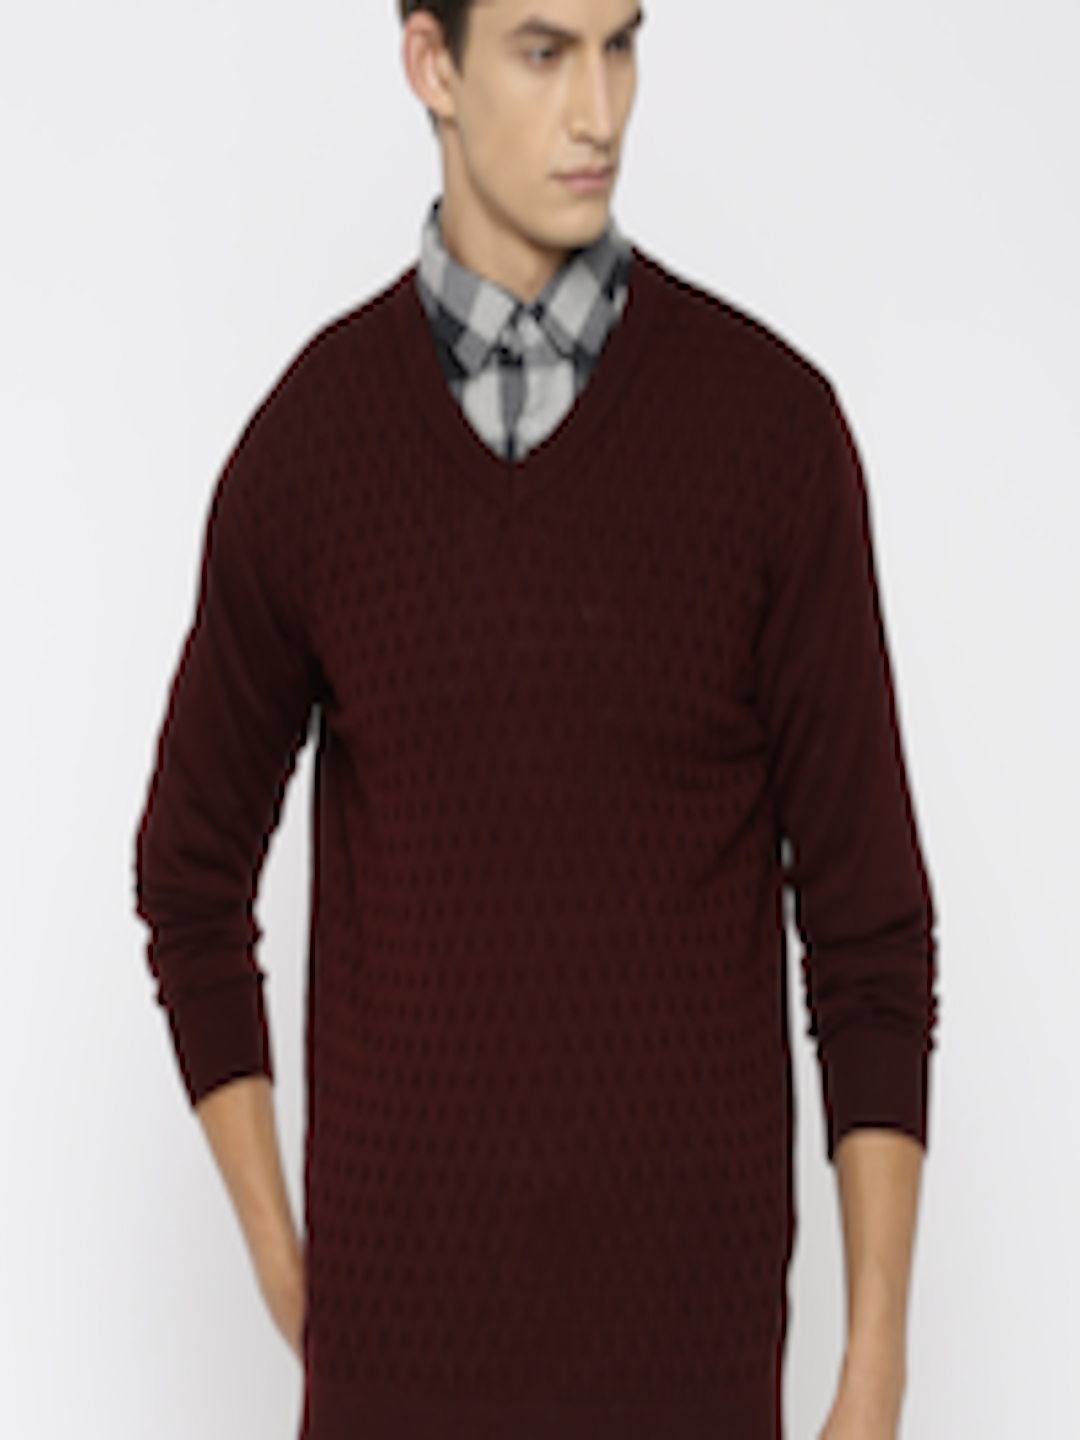 Buy Raymond Men Maroon Patterned Sweater - Sweaters for Men 1546834 ...